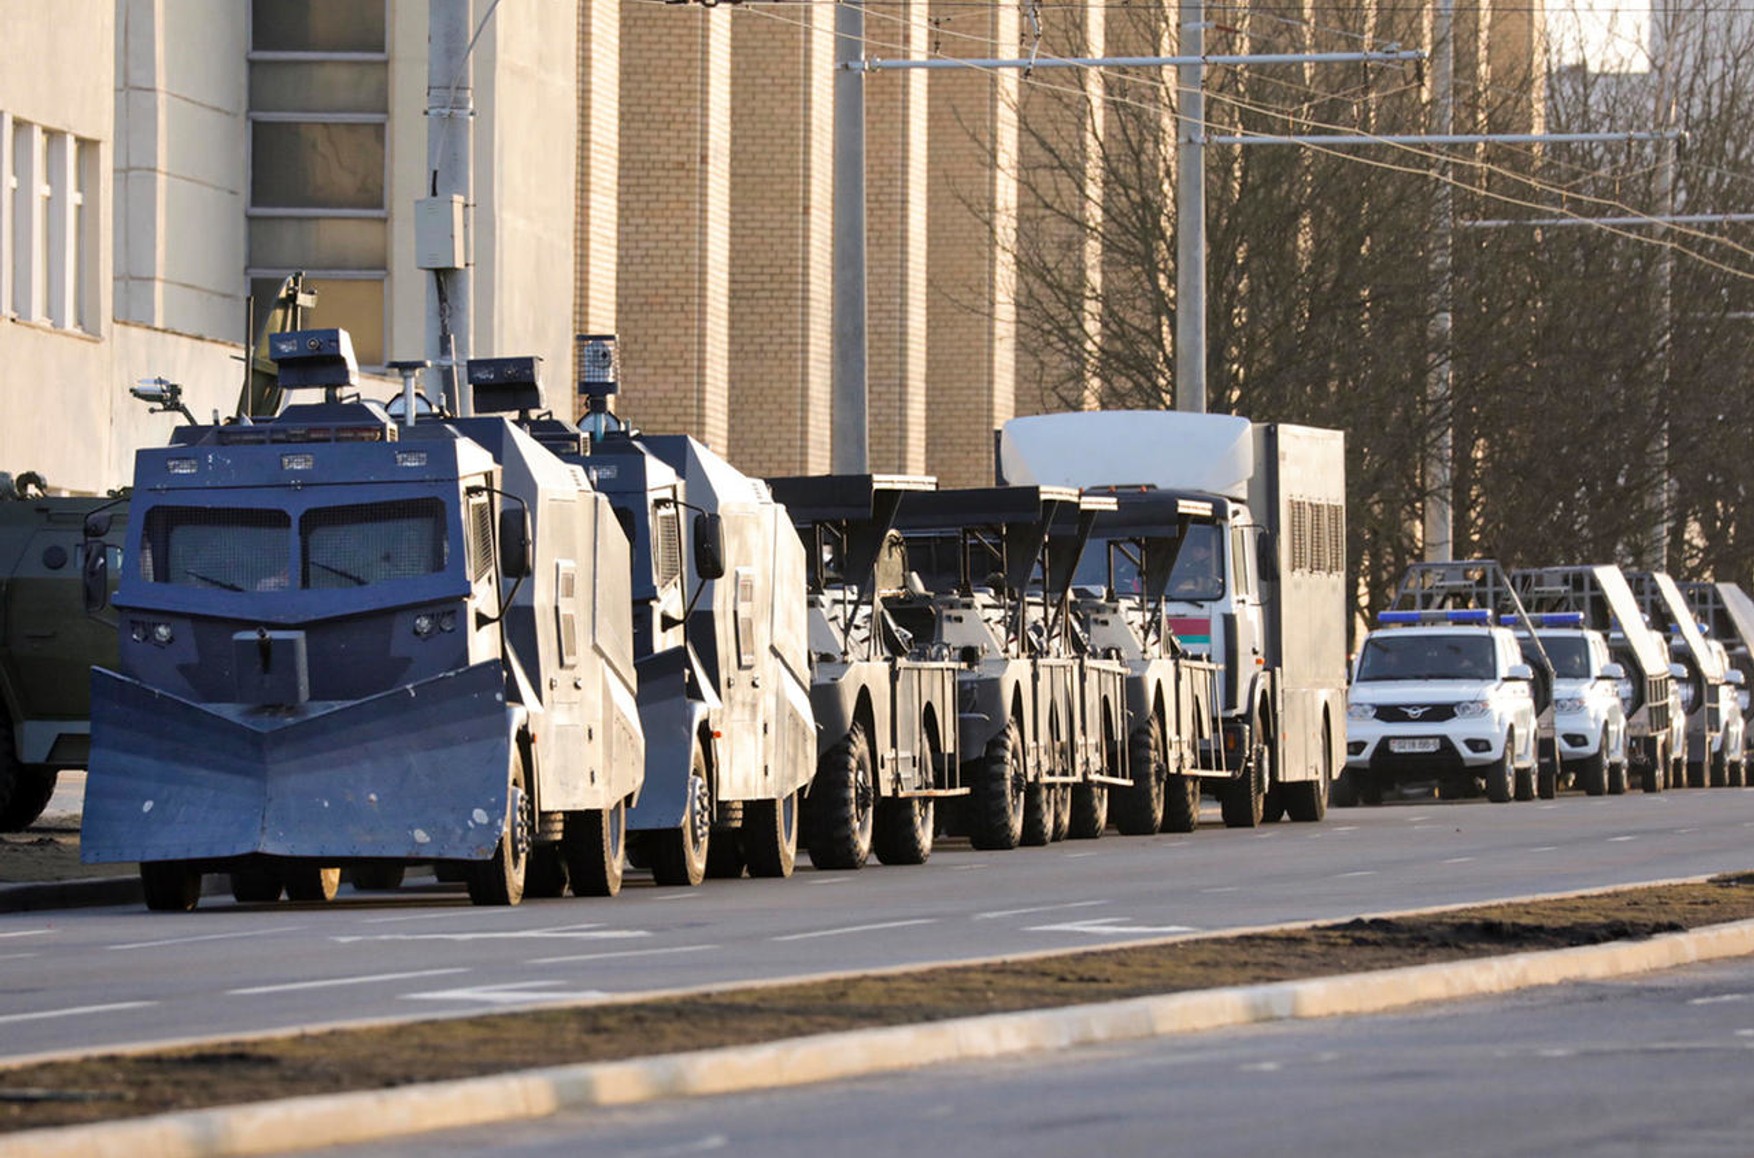 Cіловікі проводять затримання в Мінську напередодні акції опозиції, в центр стягнута спецтехніка